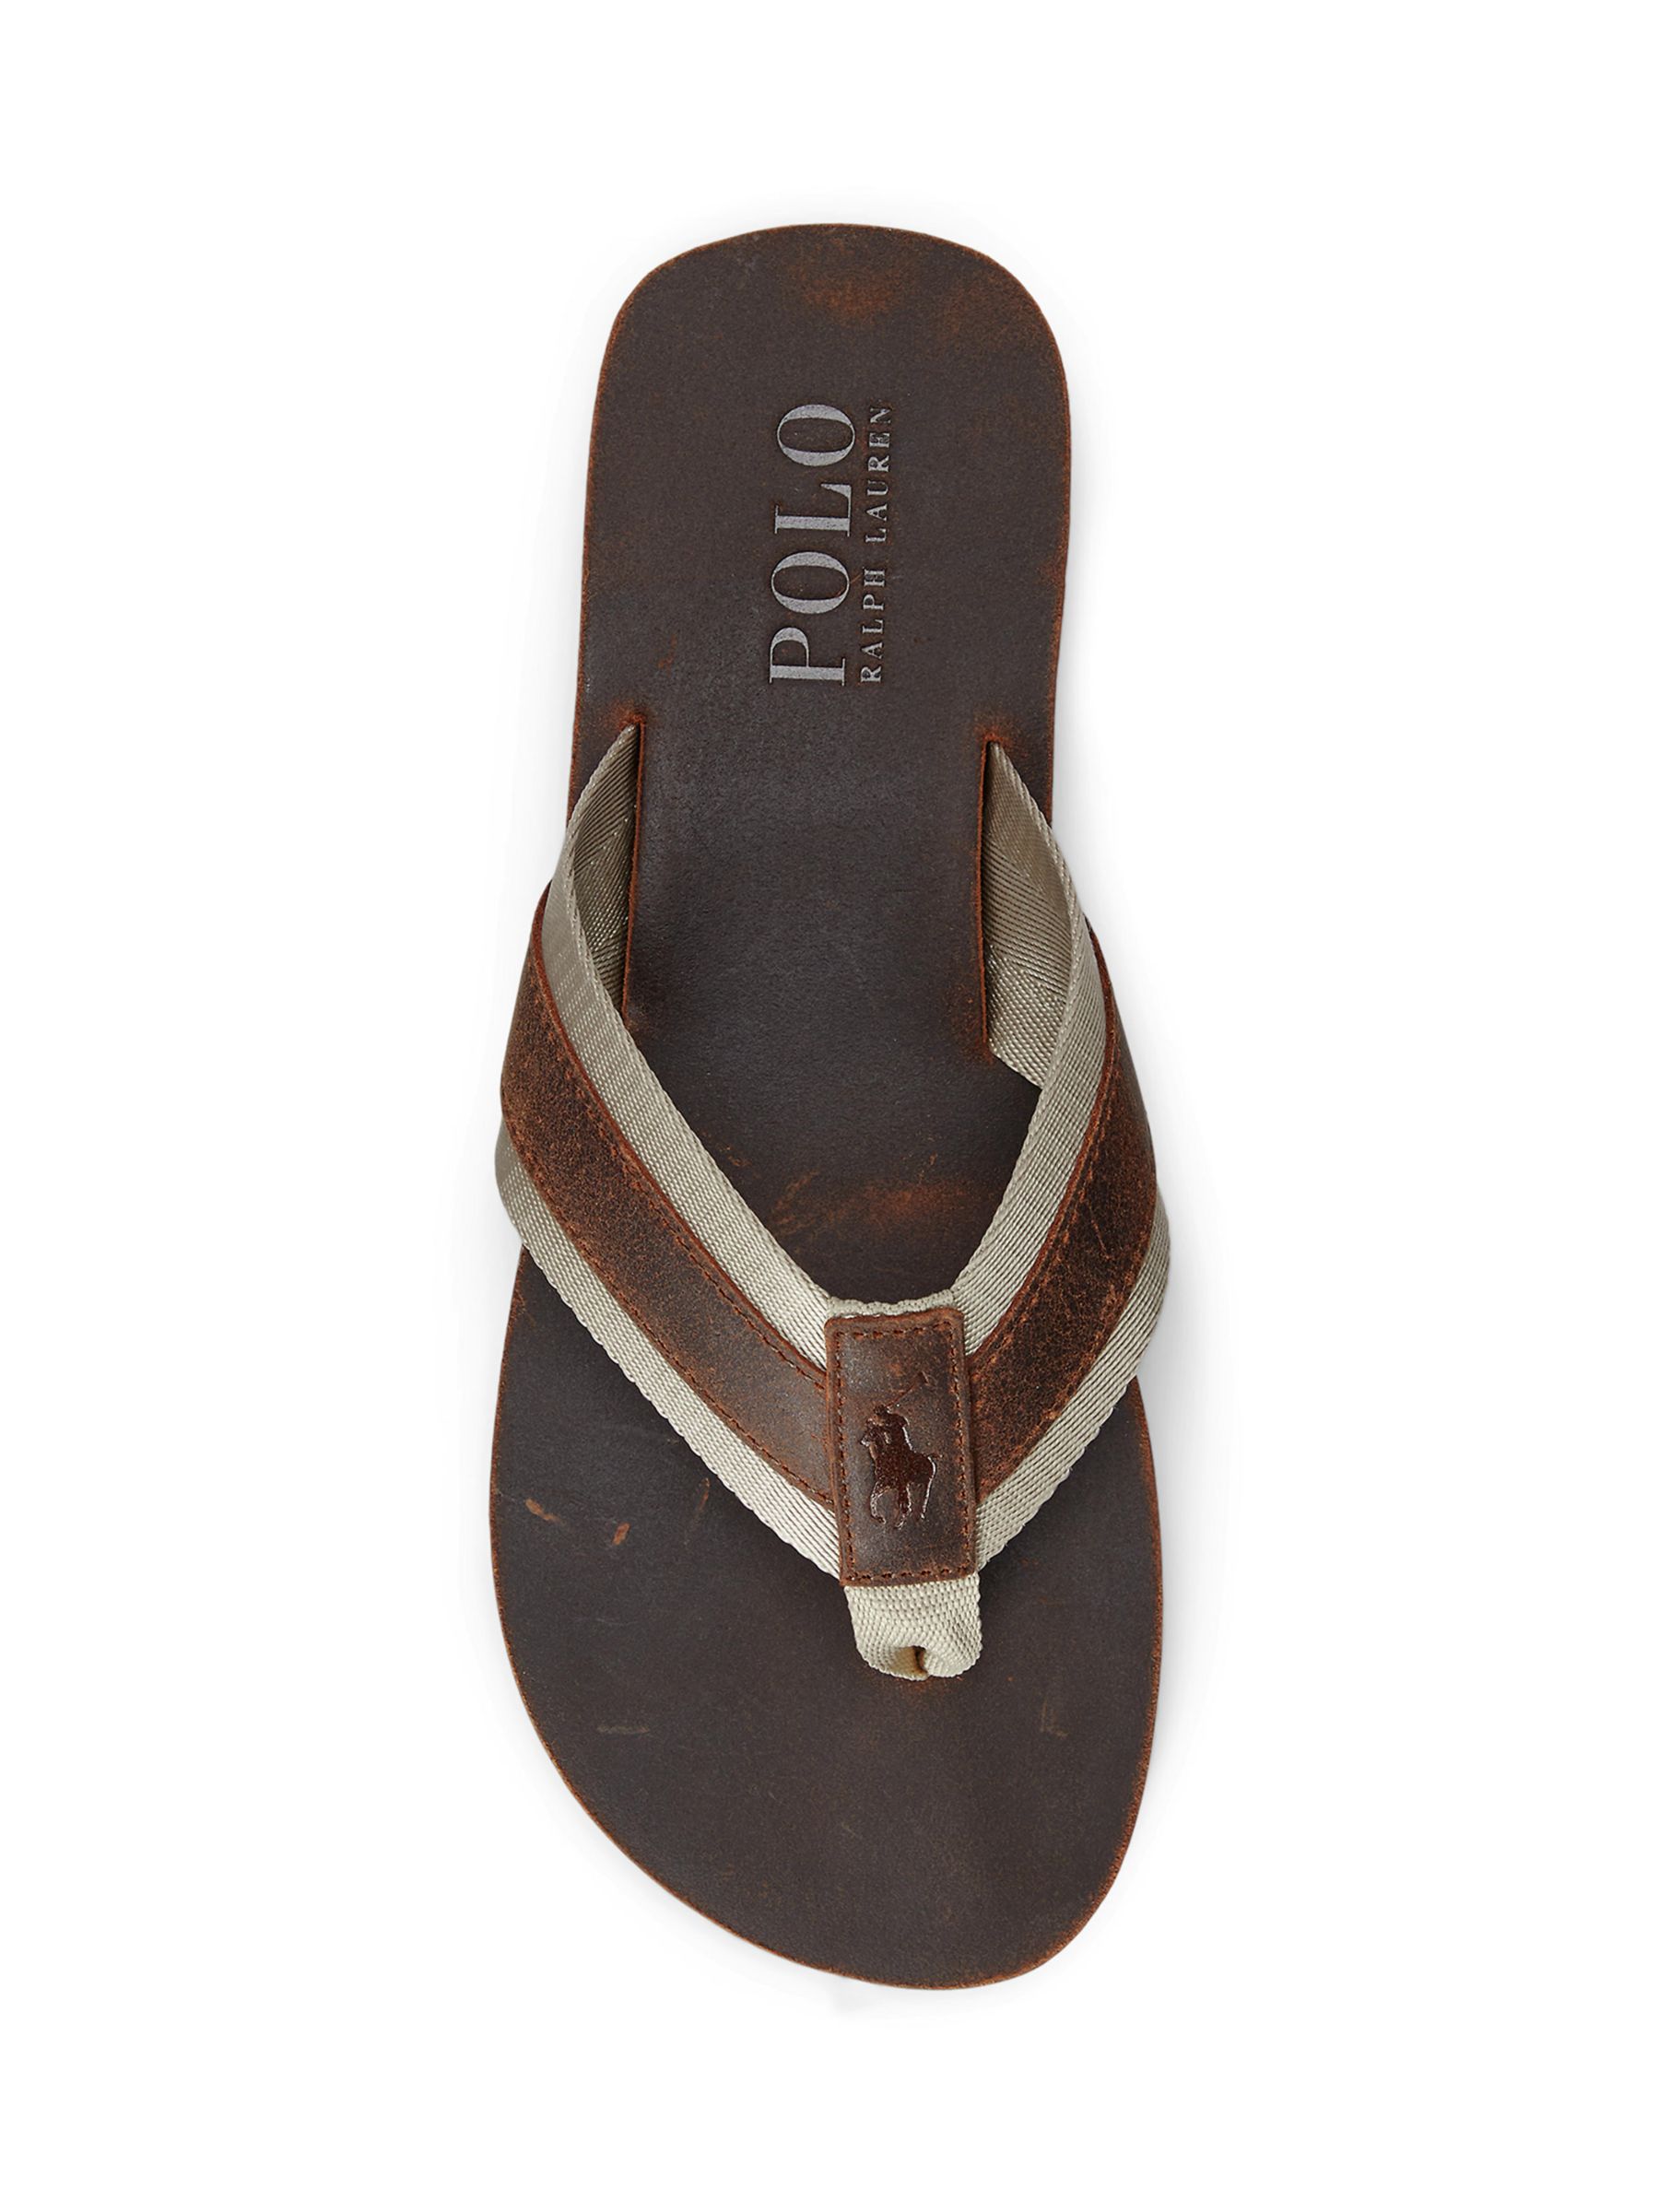 Polo Ralph Lauren Suede Leather Flip Flops, Brown, 7